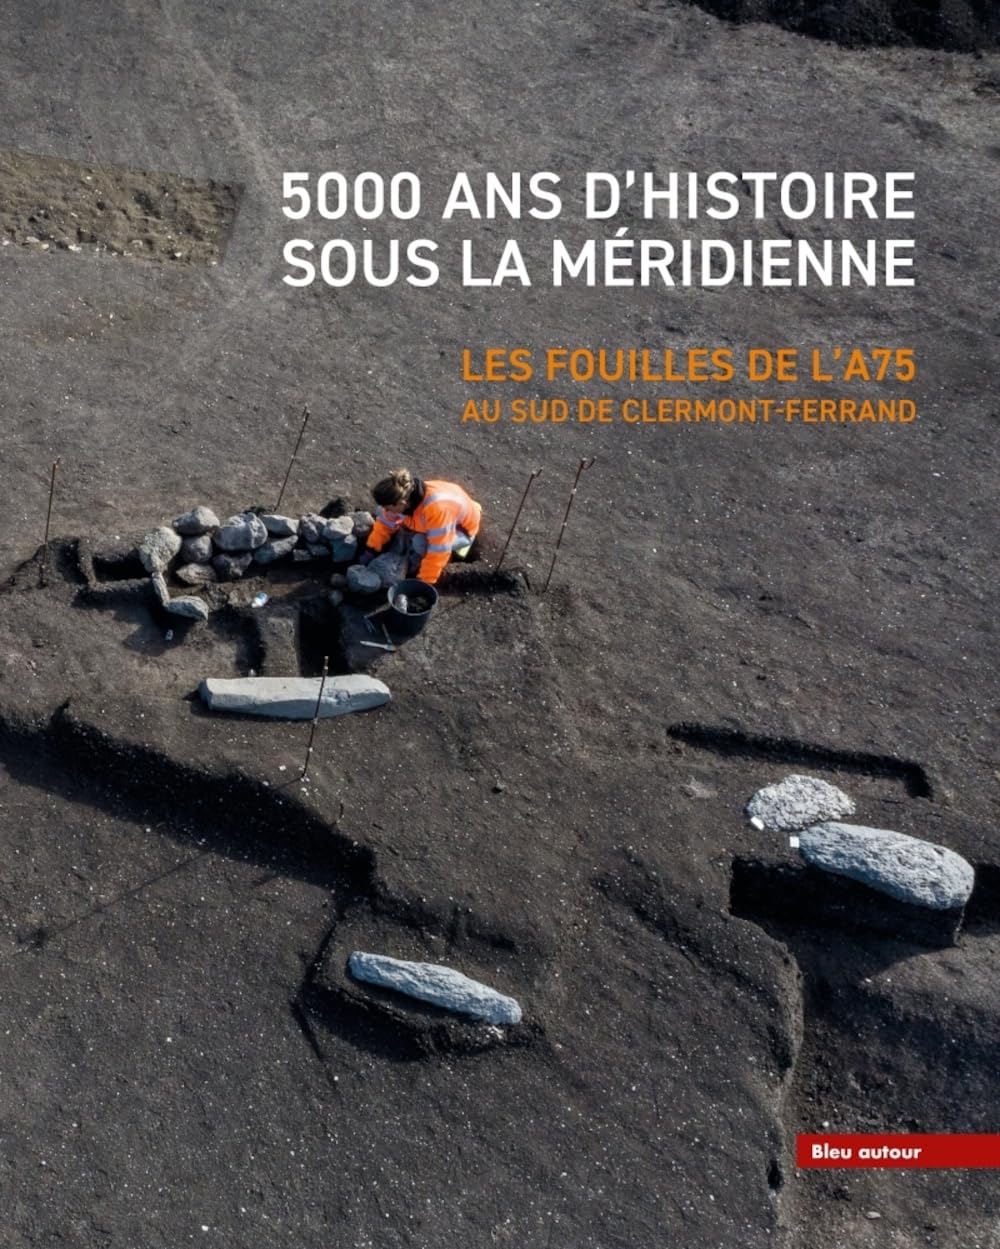 5000 ans d'histoire sous la Méridienne. Les fouilles de l'A75. Au sud de Clermont-Ferrand, 2023, 192 p.